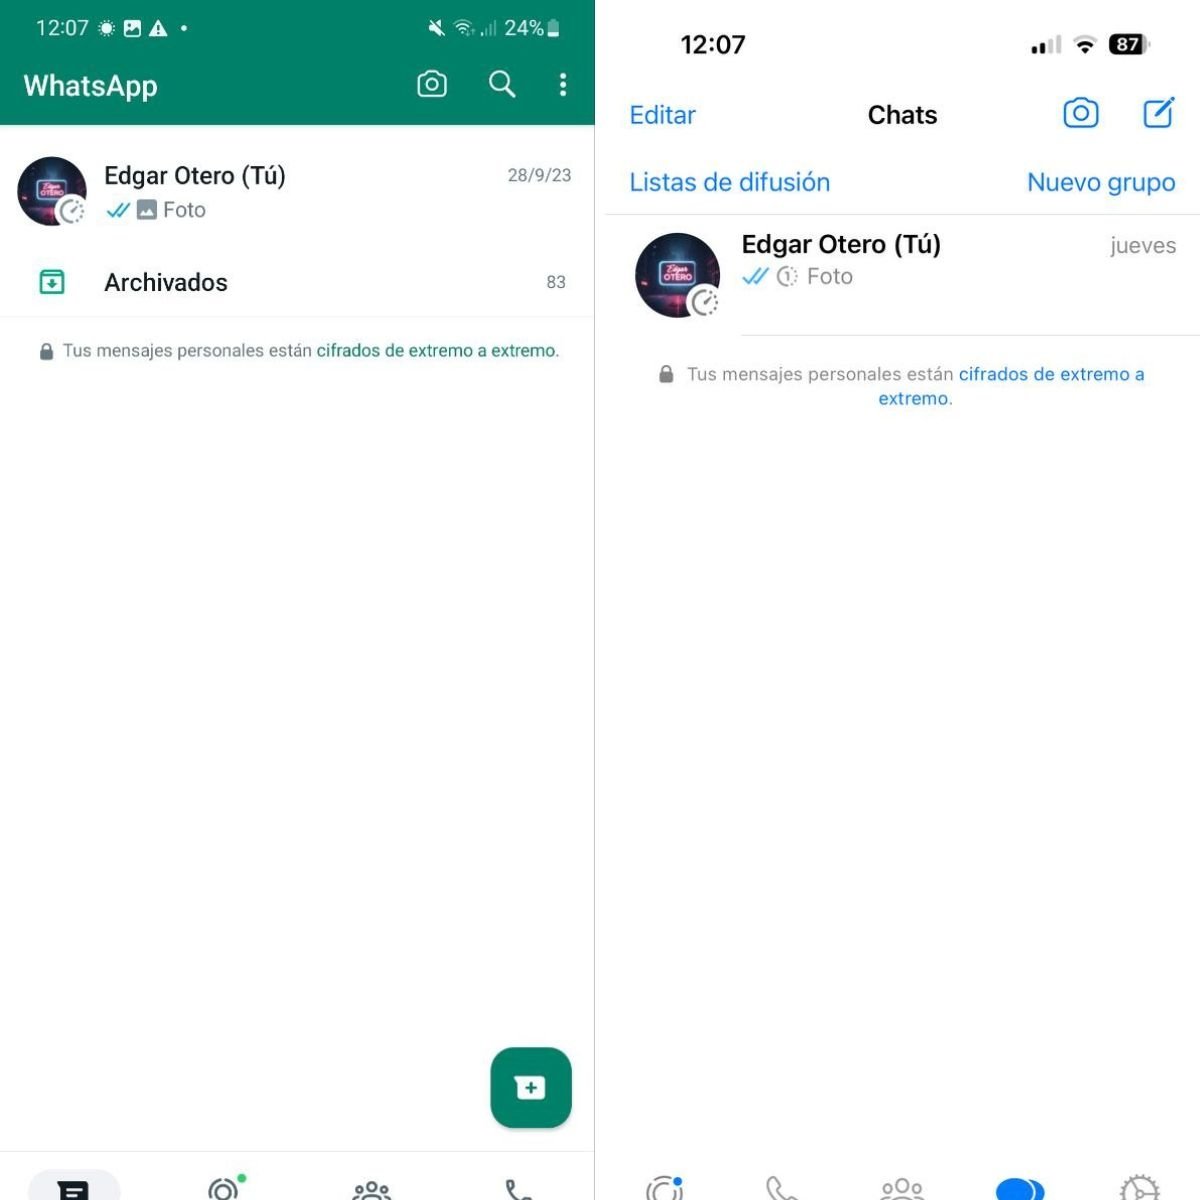 La interfaz de WhatsApp en Android y iOS, respectivamente